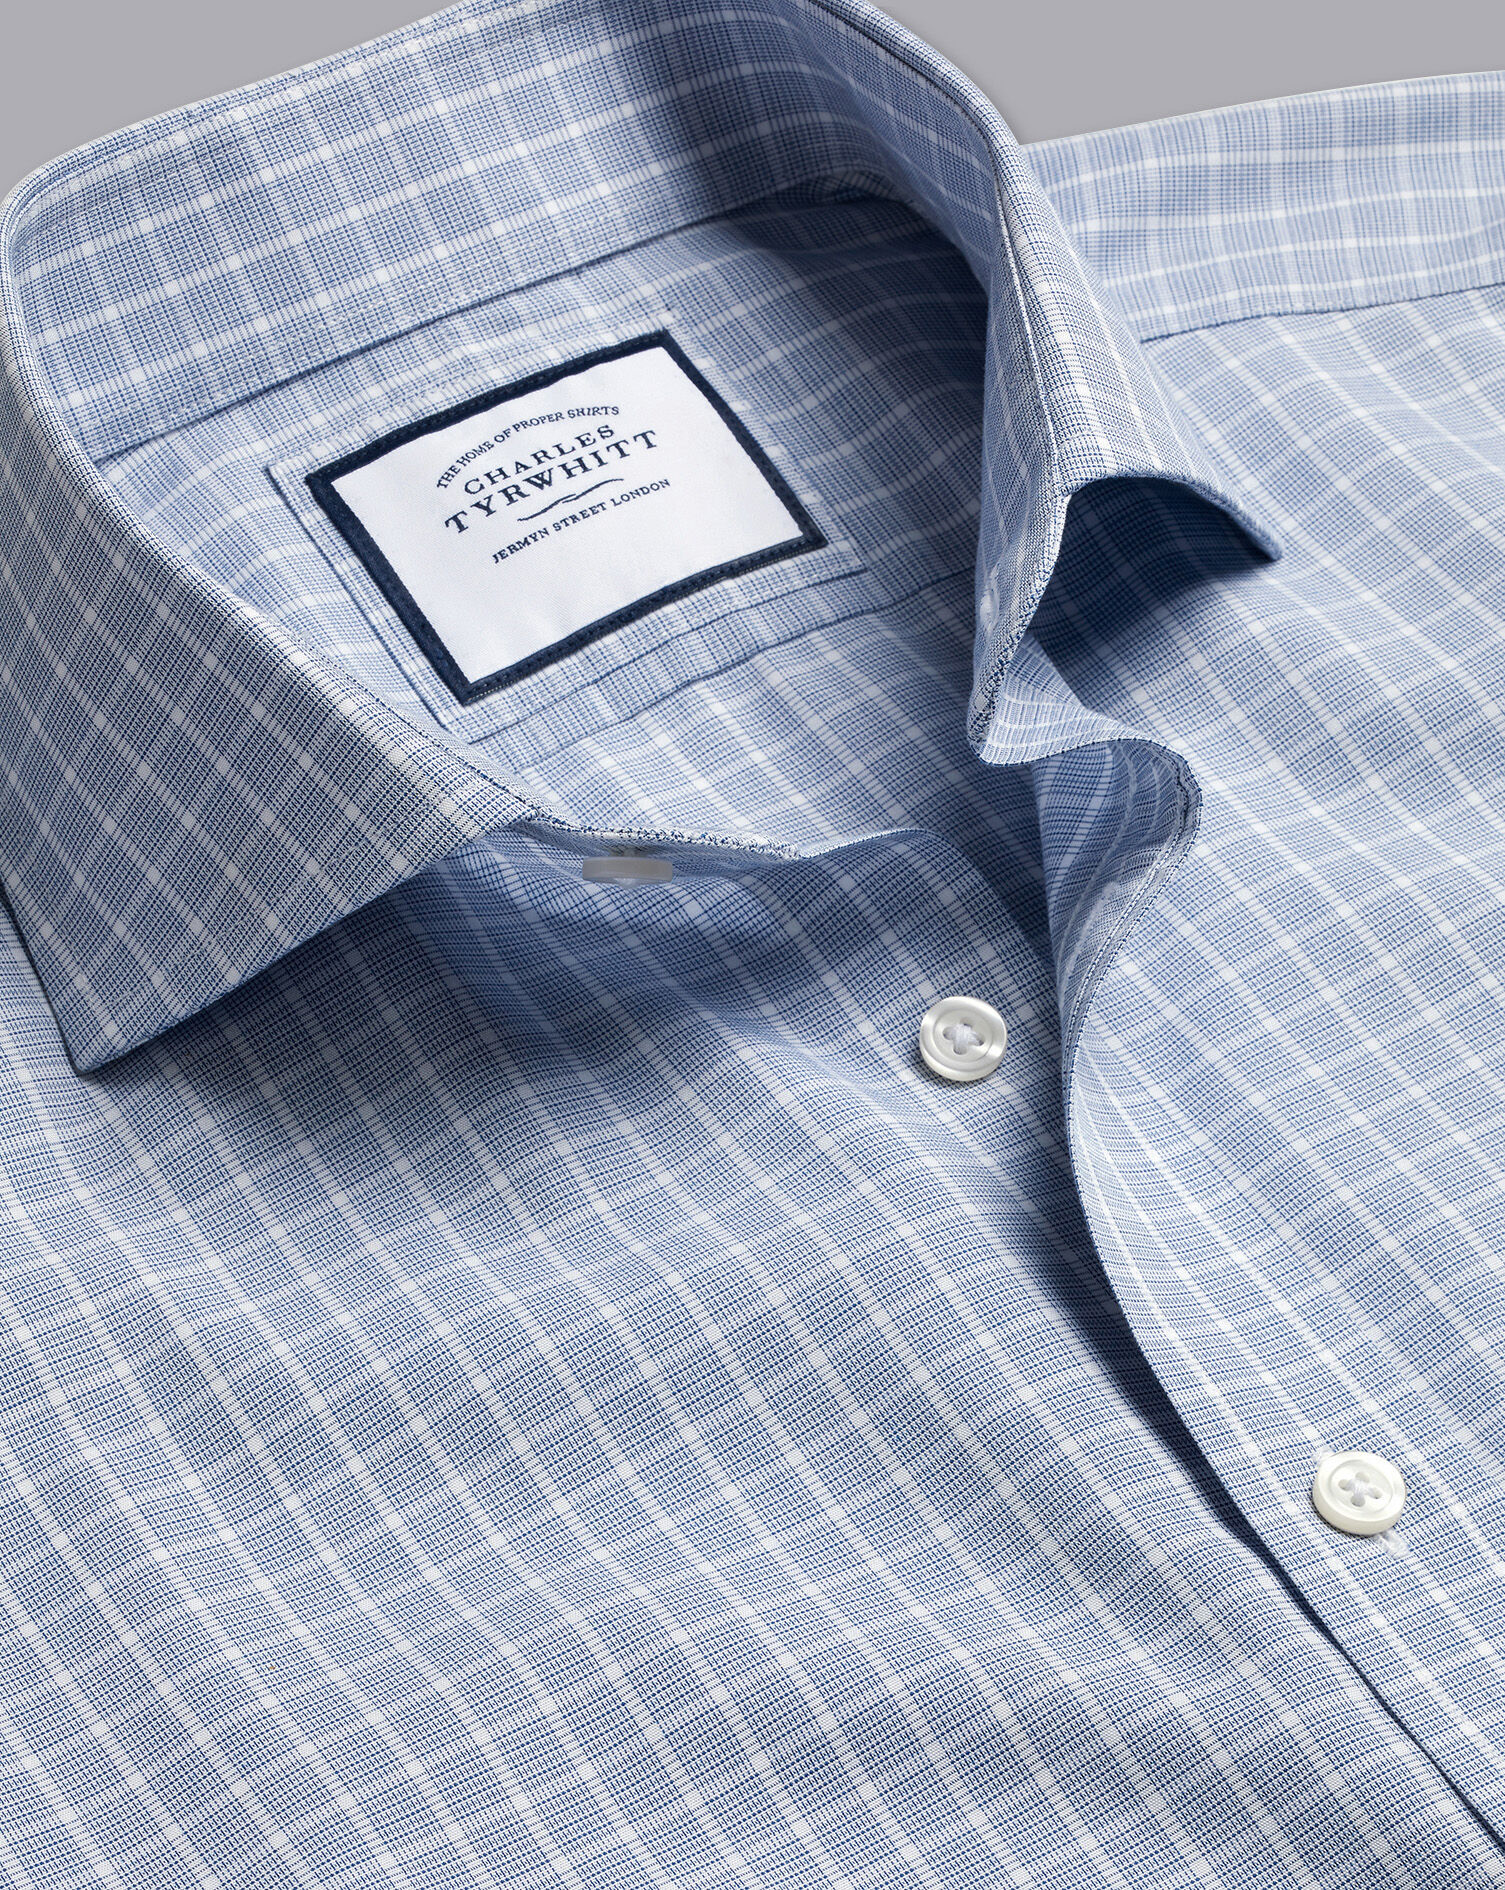 Charles Tyrwhitt Charles Tyrwhitt blue white stripes 100% cotton Shirt UK men's size 17" collar 